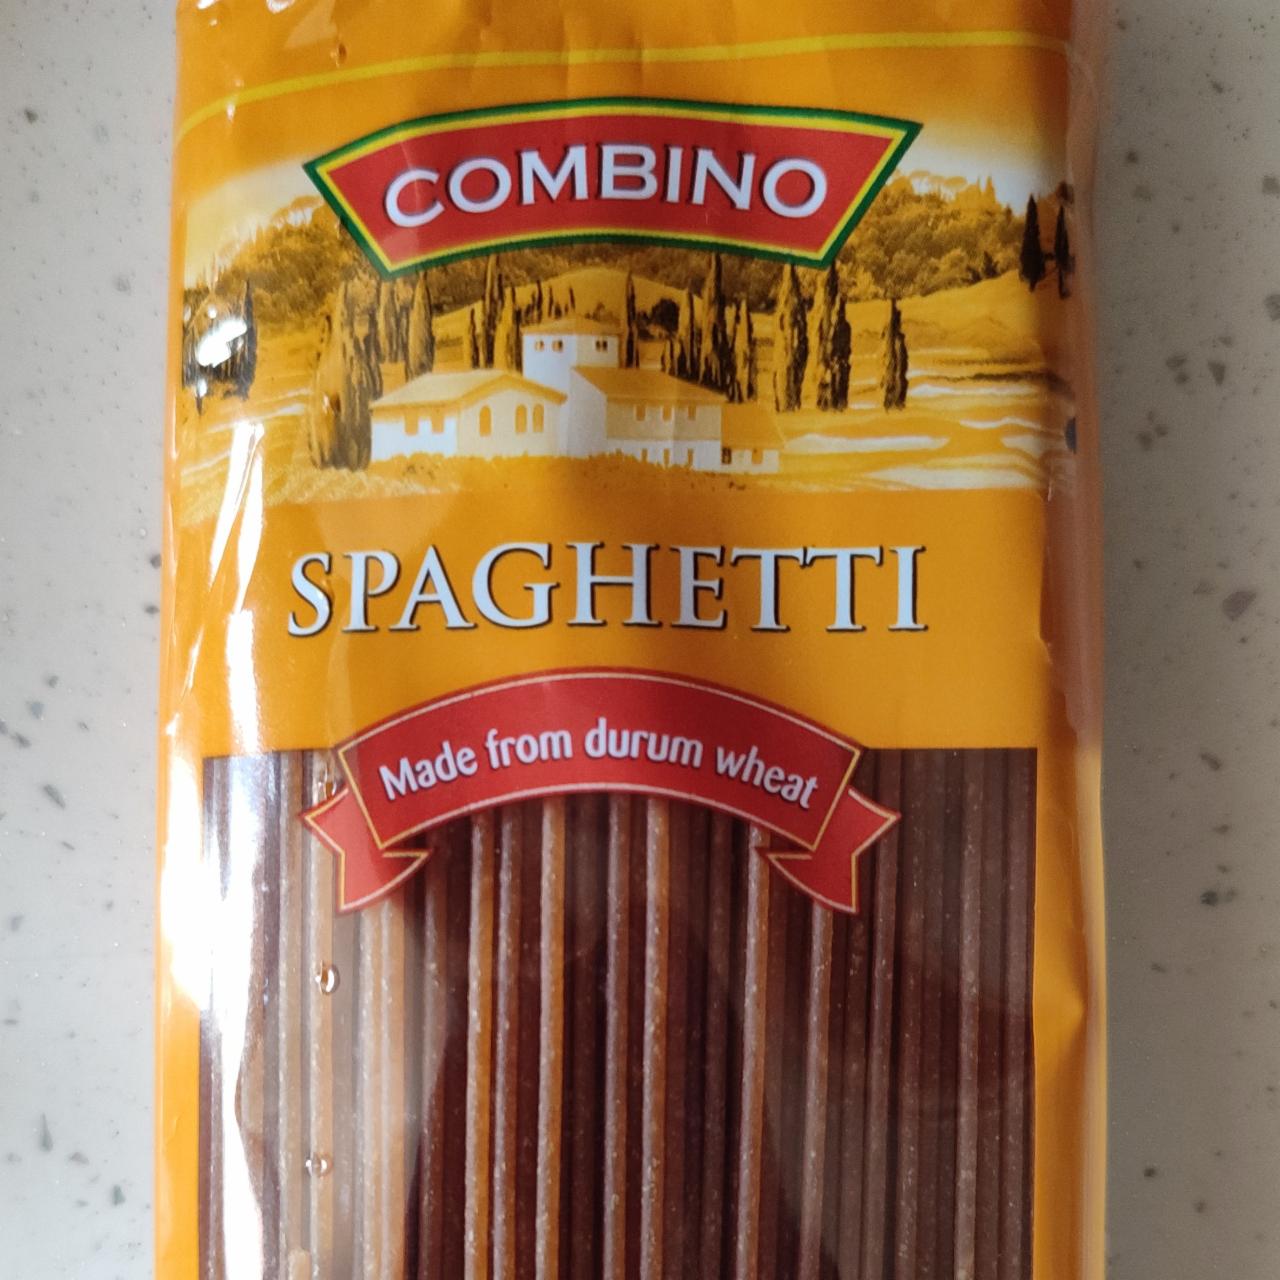 Fotografie - Spaghetti made from durum wheat Combino